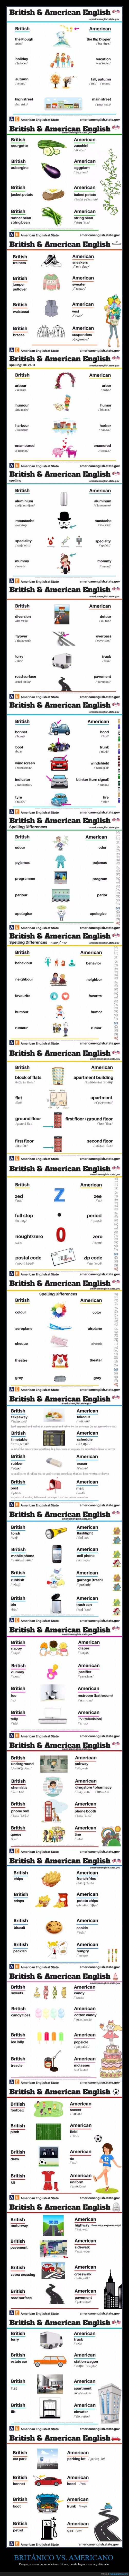 inglés,diferencia,diferente,palabra,americano,británico